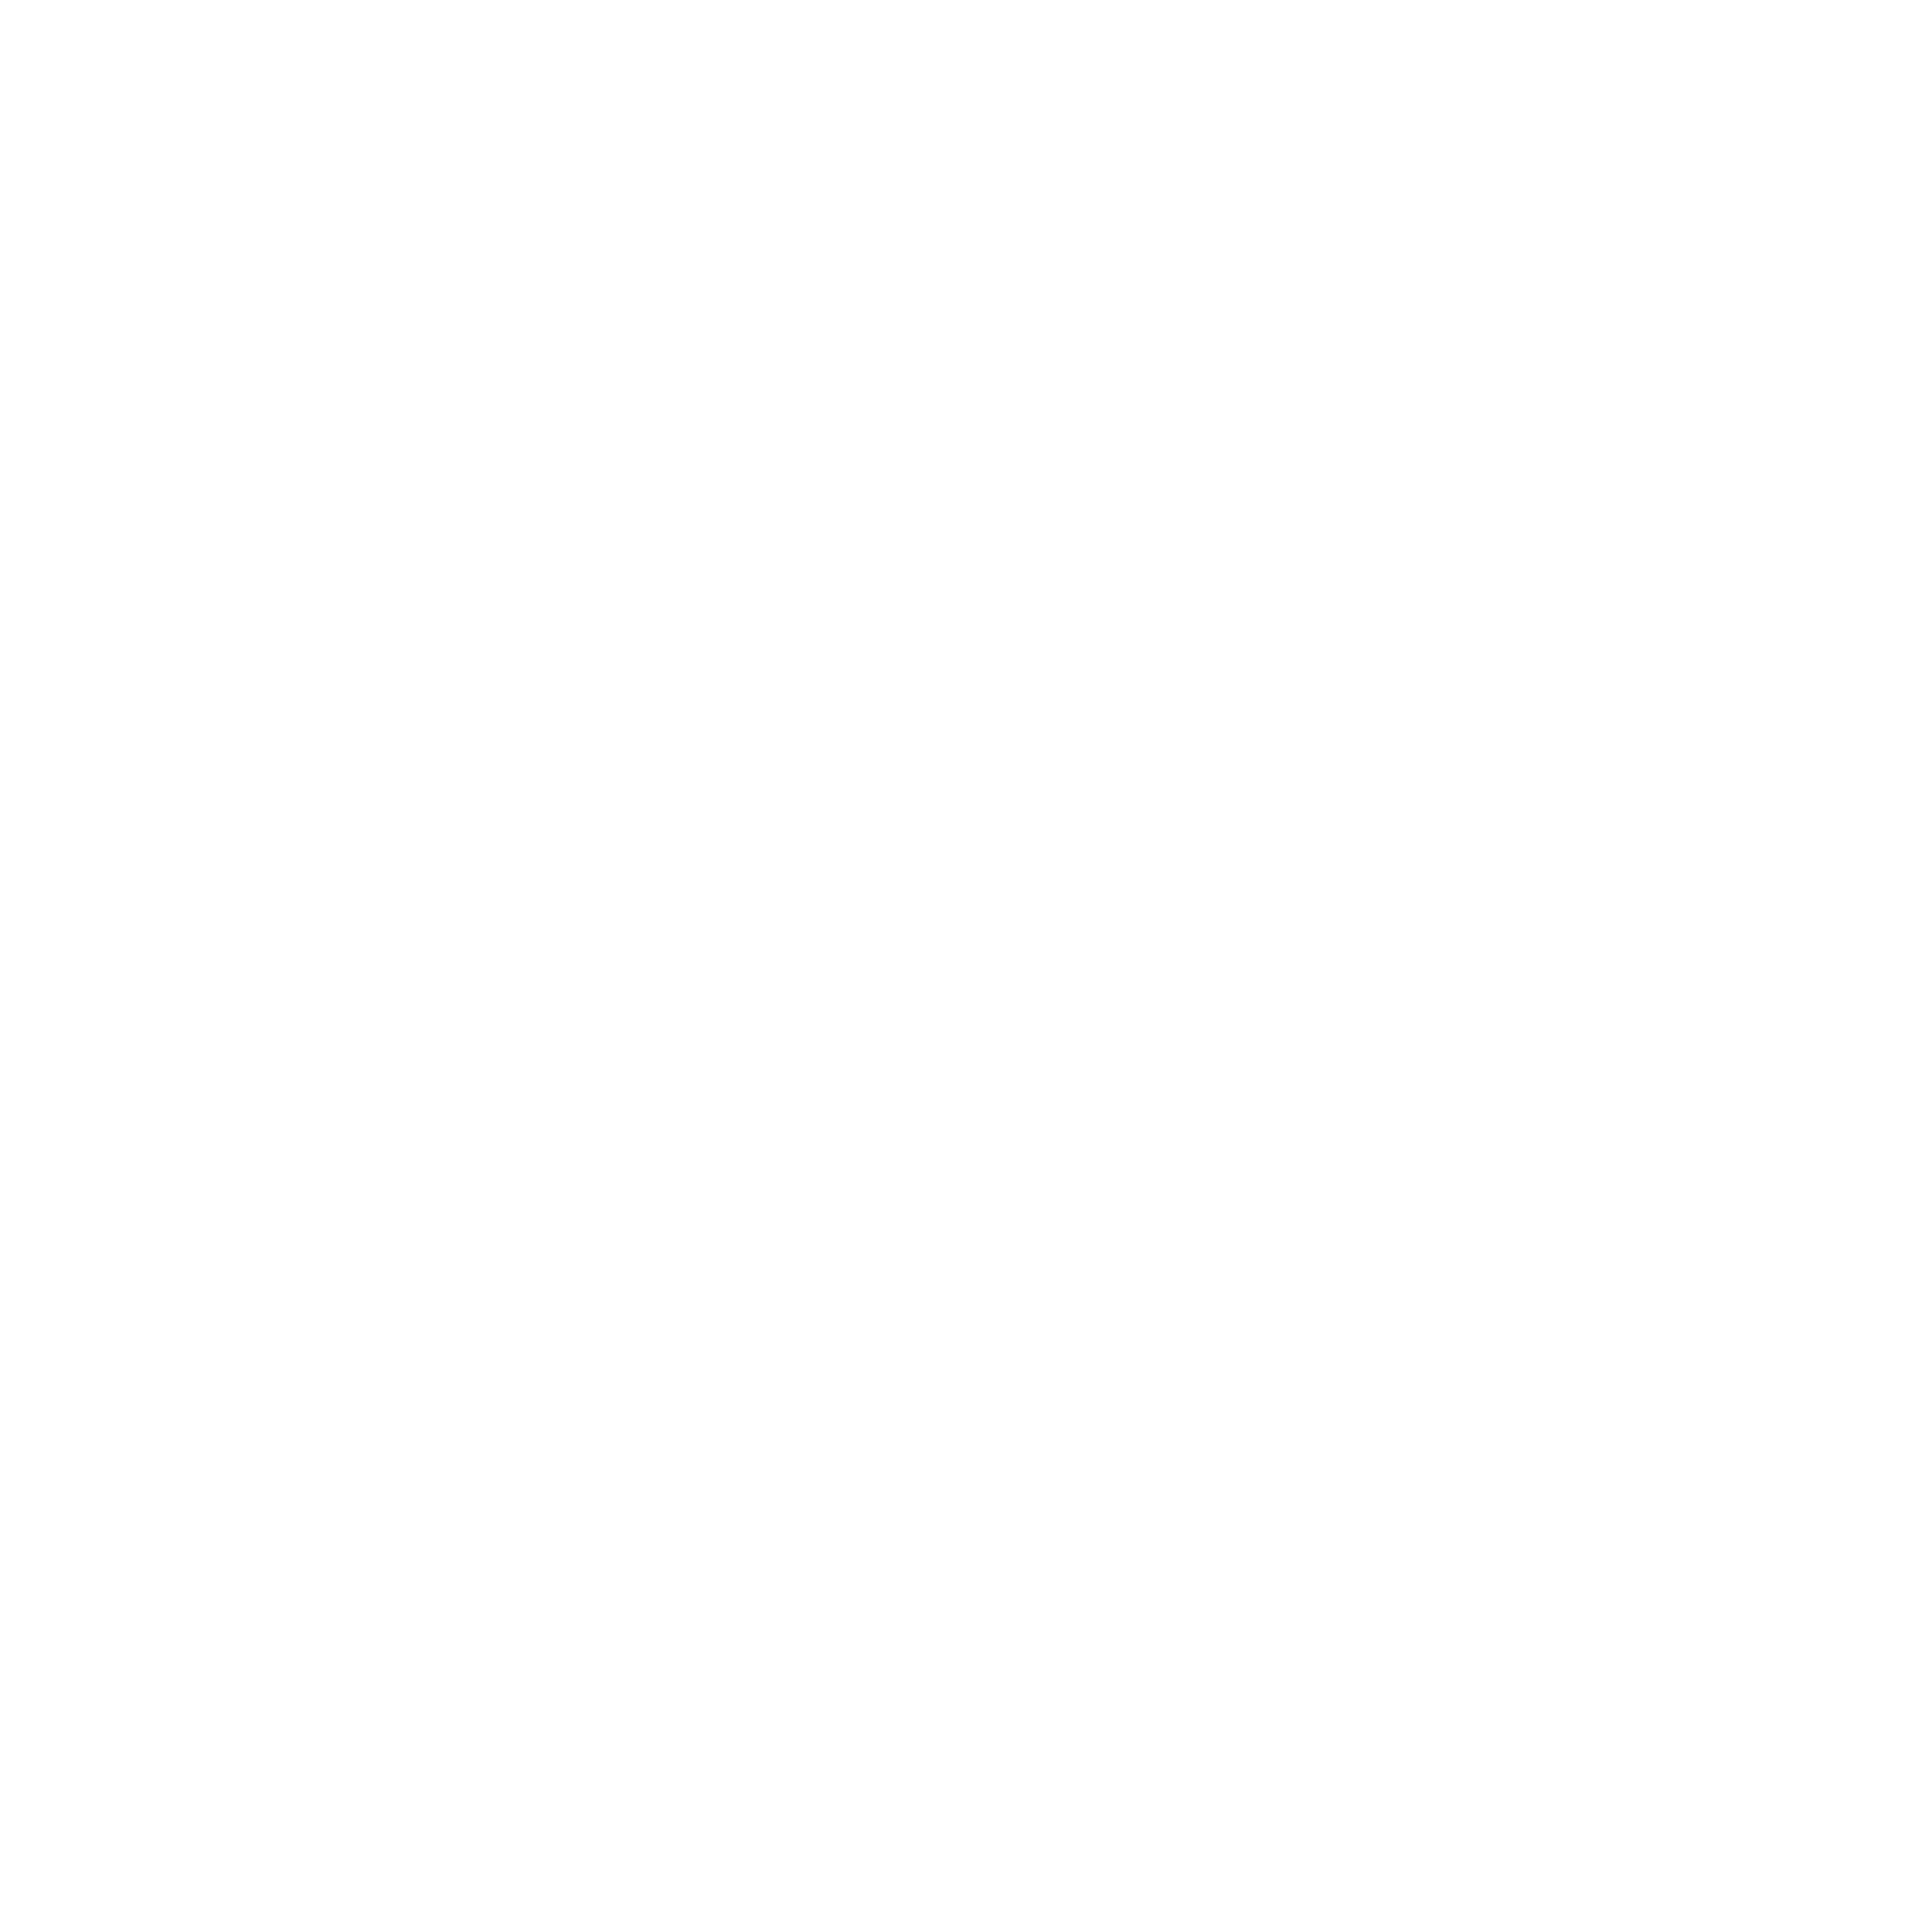 Izawa Ceramics